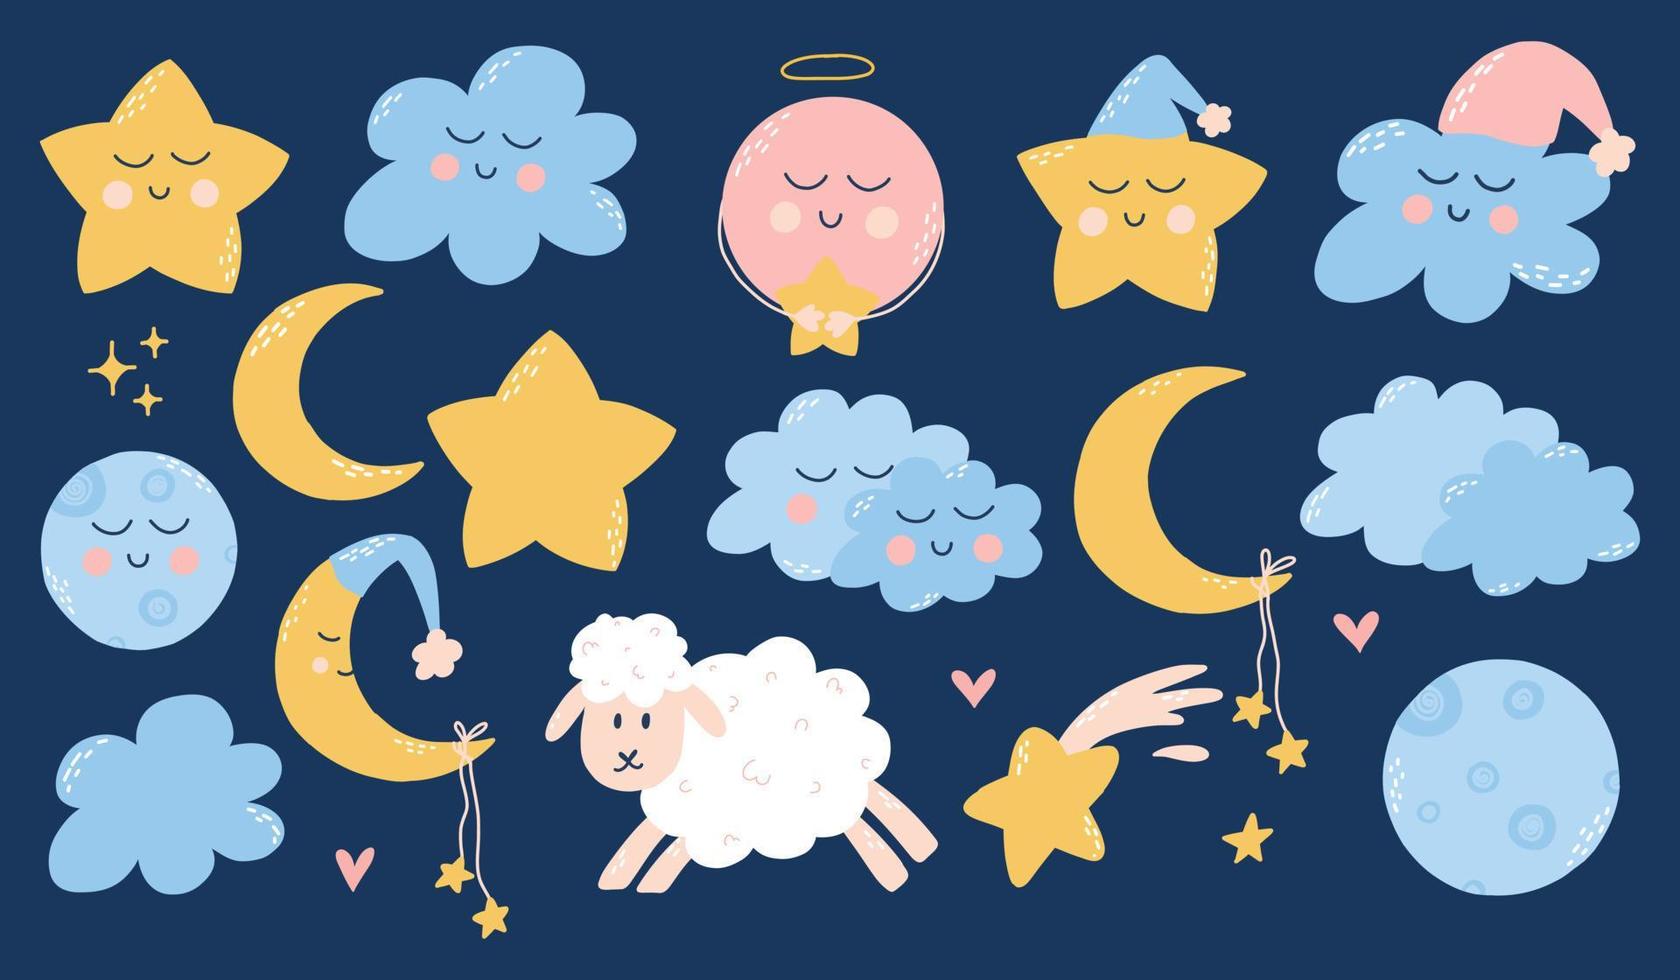 carino infantile impostato di bene notte elementi. bambini collezione di stelle, nuvole, lune, pianeti. vettore illustrazione nel mano disegnato cartone animato stile.